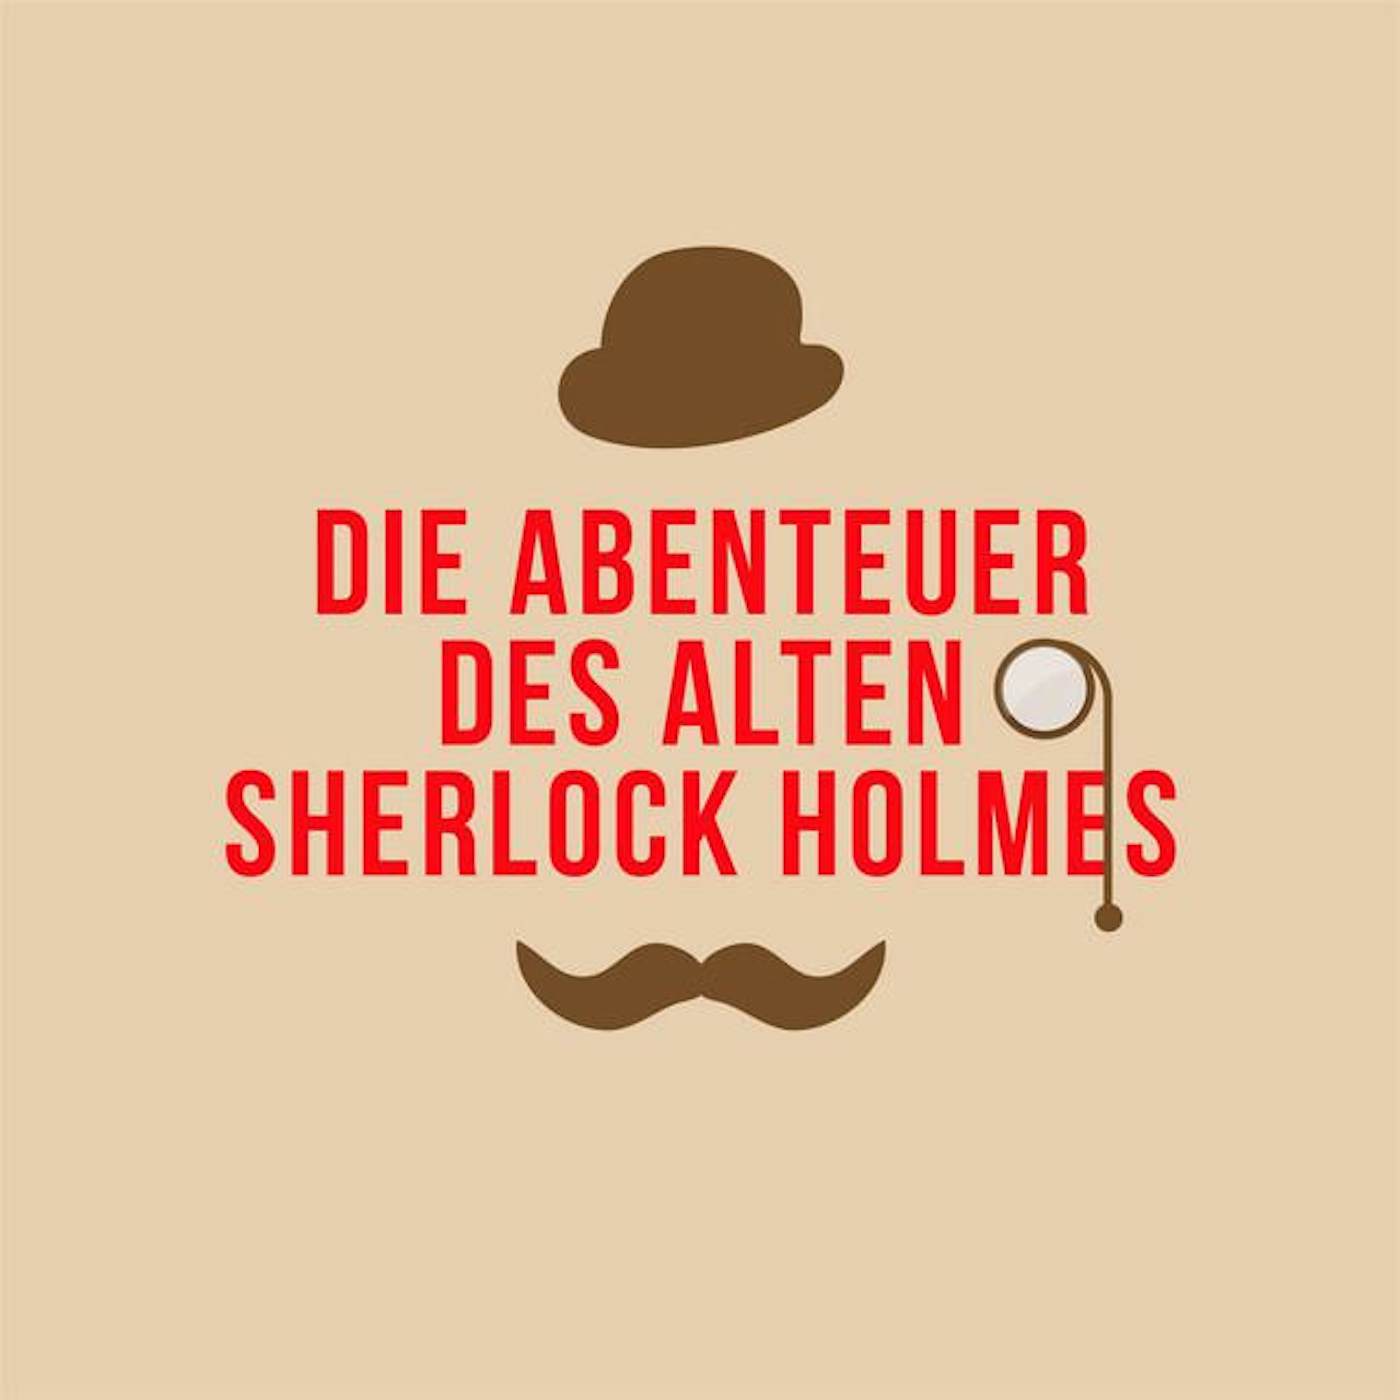 Der alte Sherlock Holmes